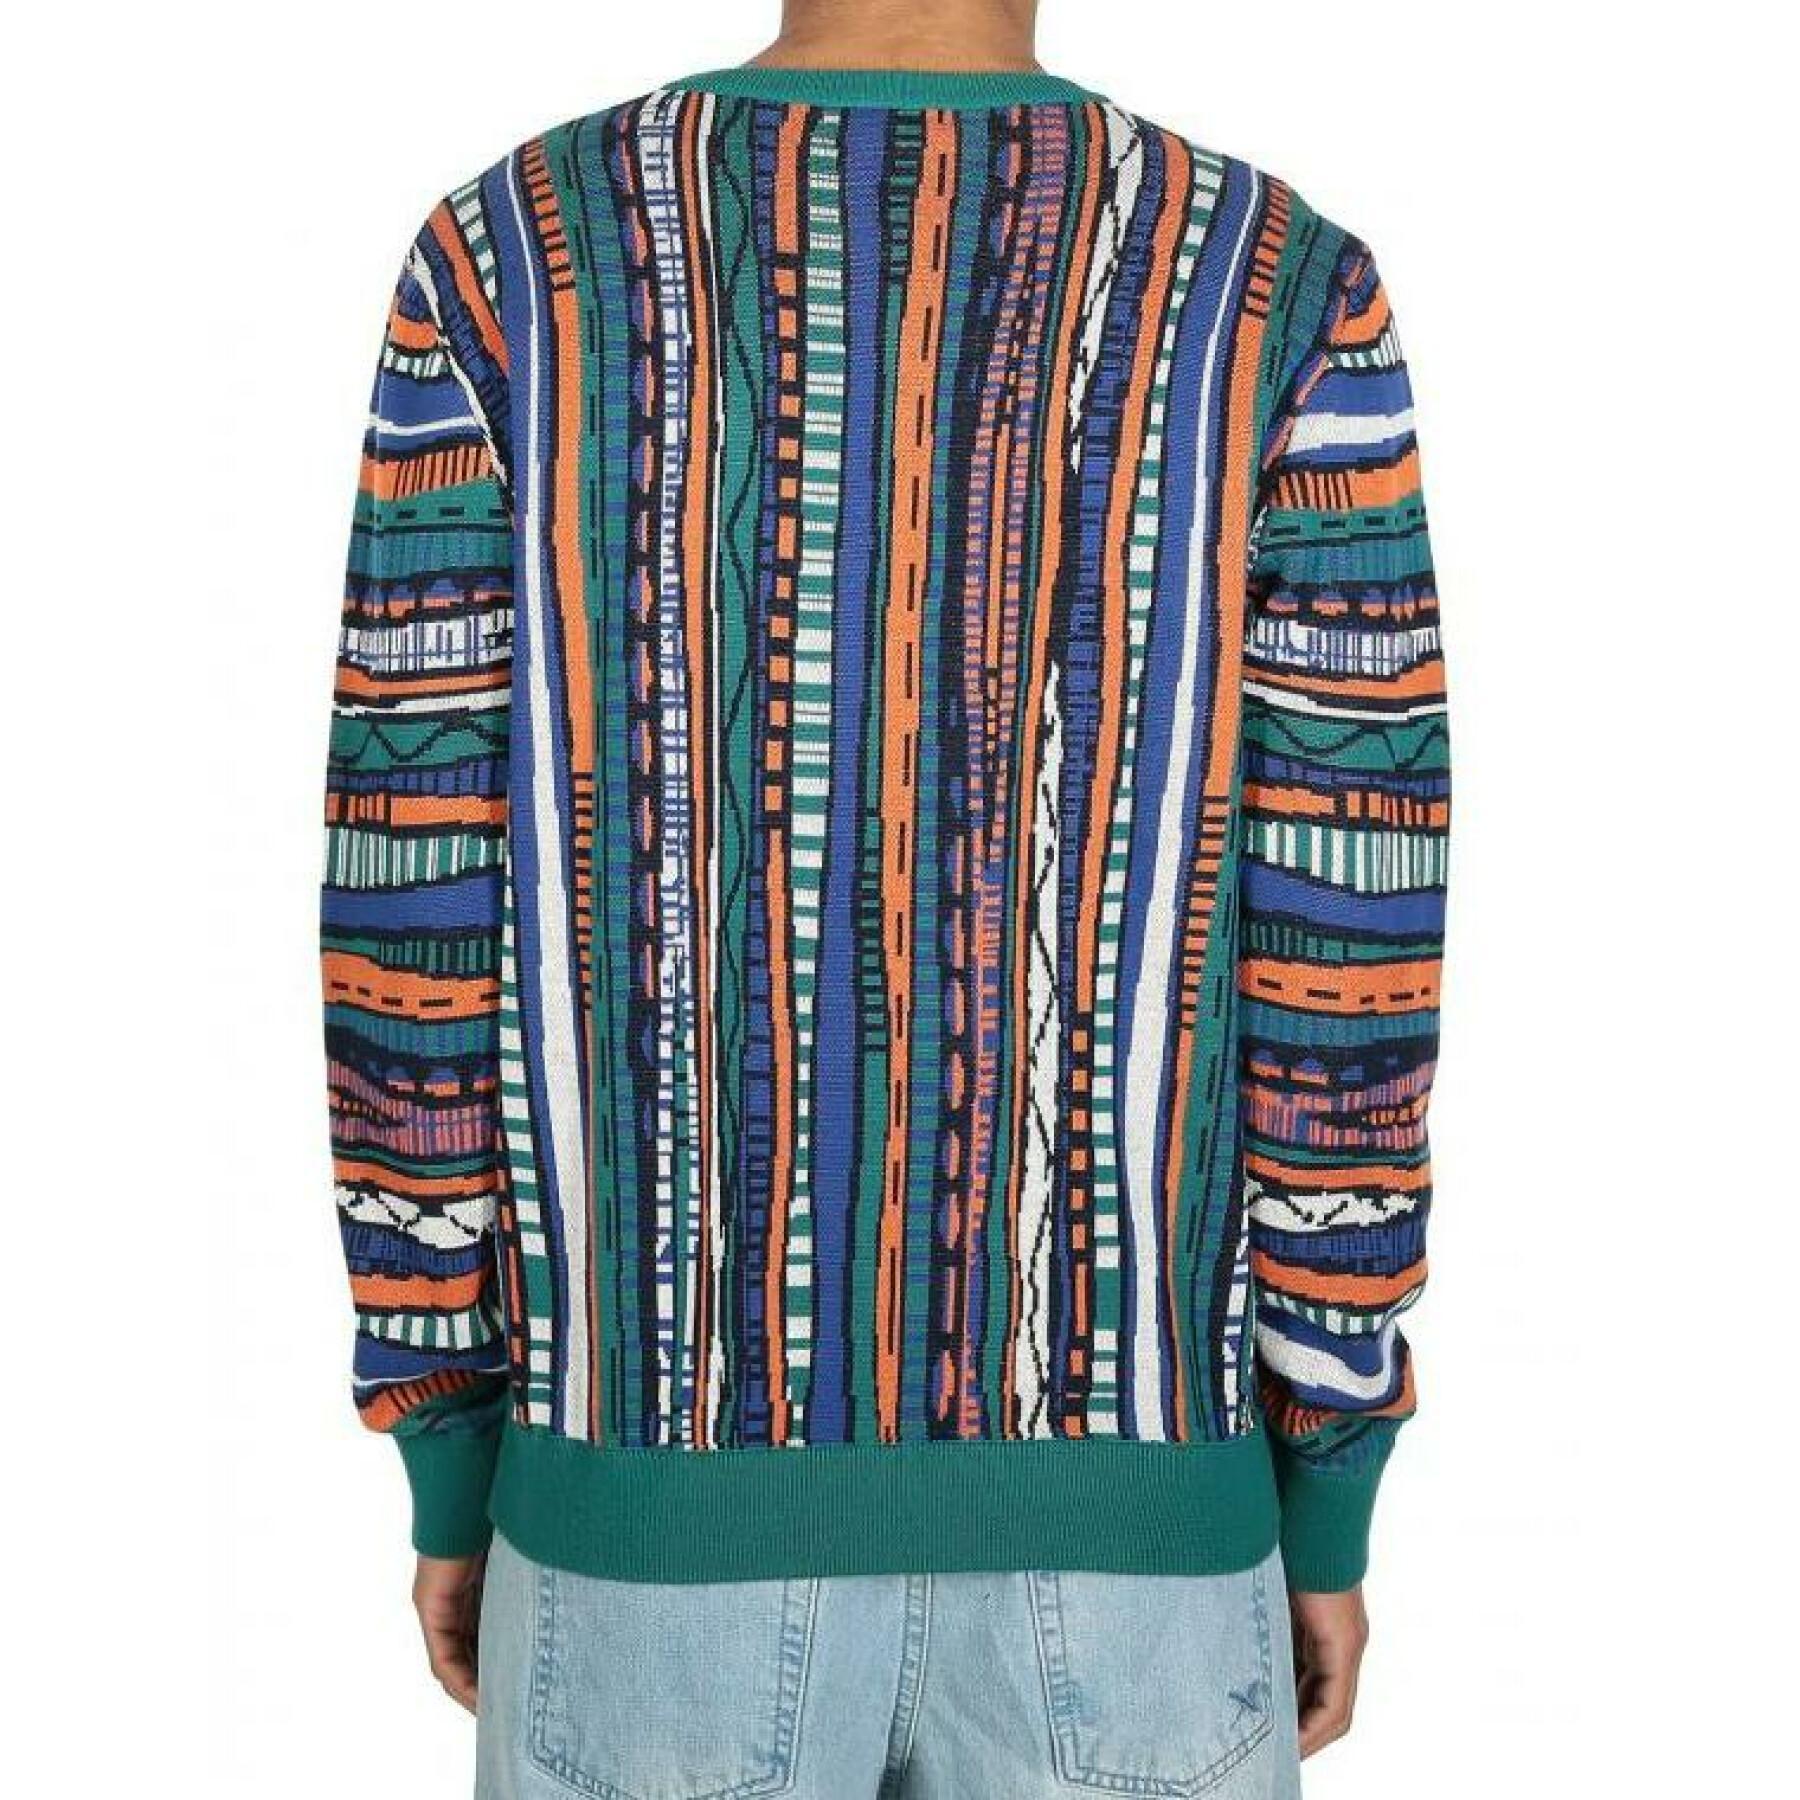 Sweatshirt Iriedaily theodore summer knit